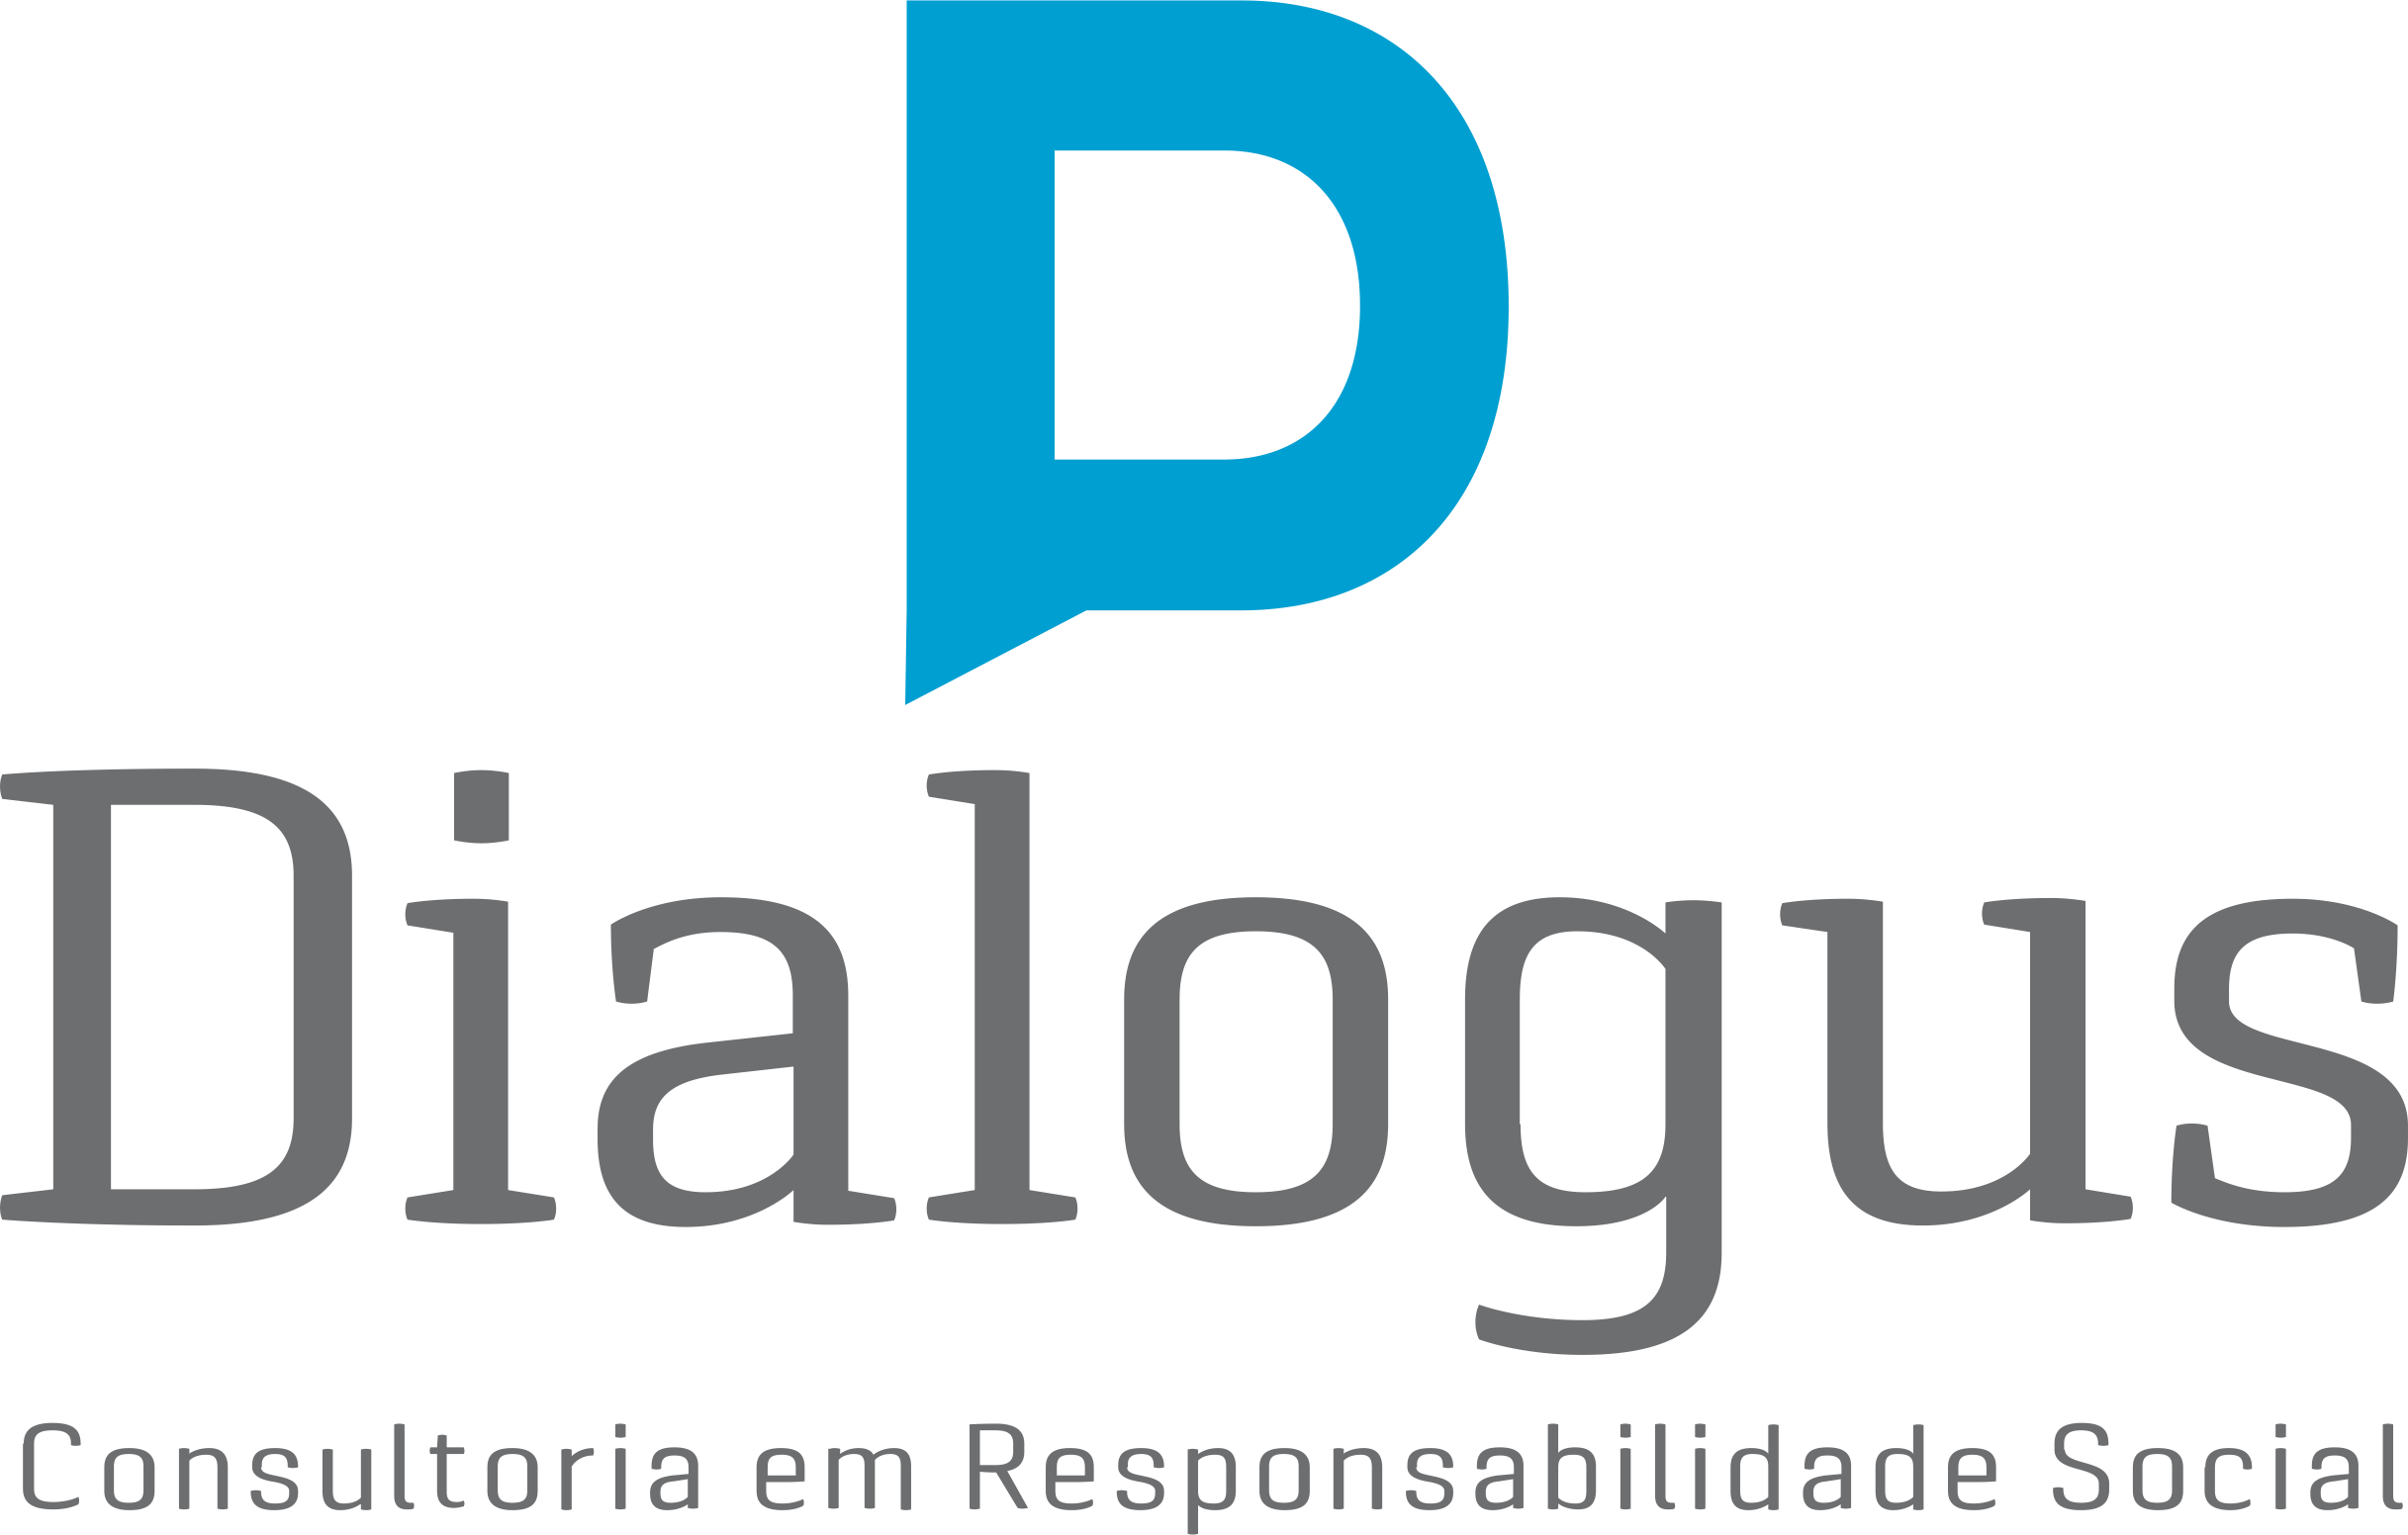 Dialogus Responsabilidade Social - Consultoria - Diagnóstico de Responsabilidade Social - Fortaleza/CE